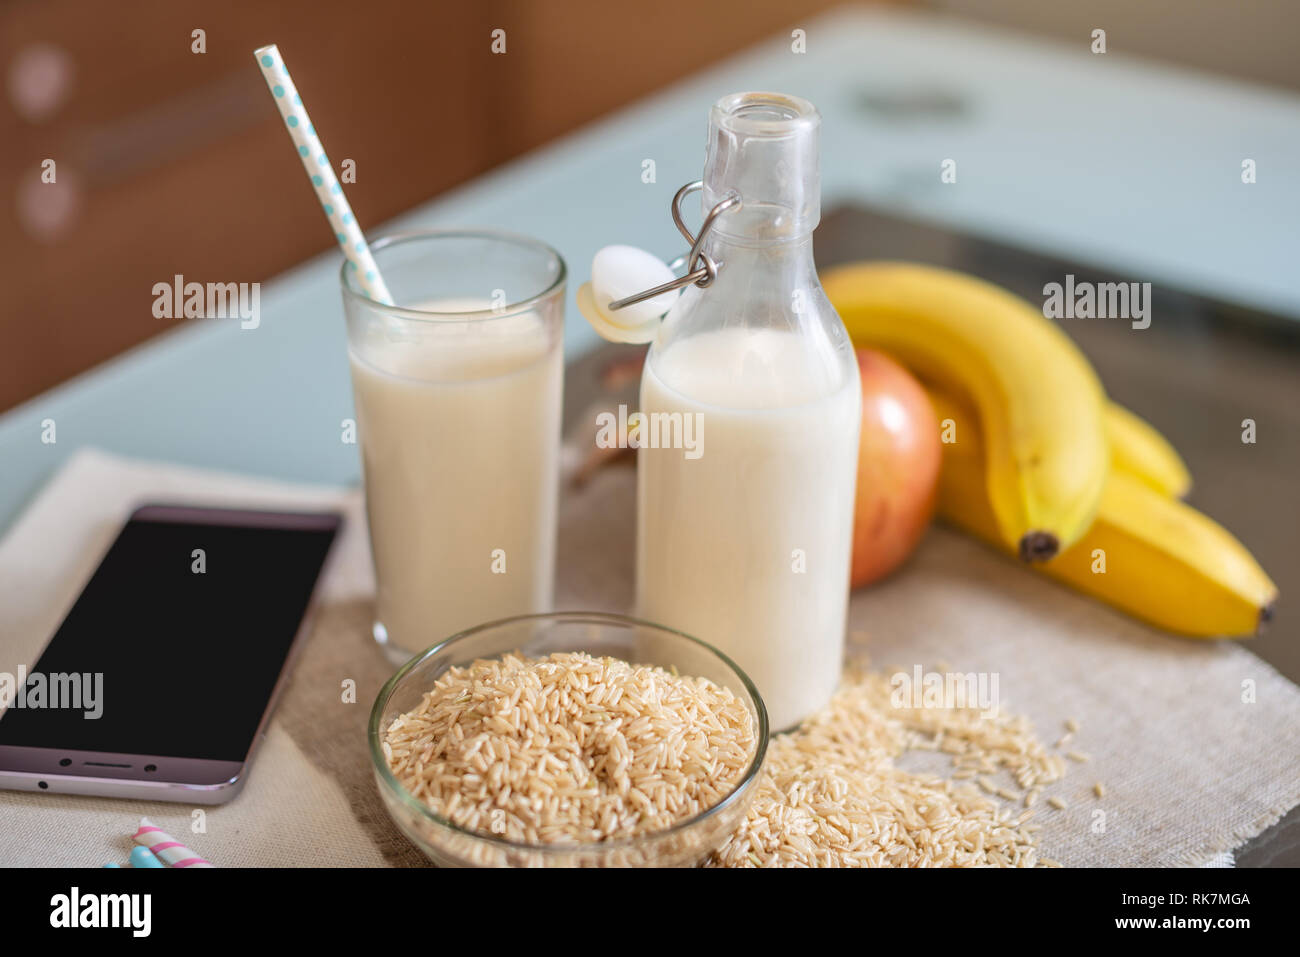 Le lait de riz dans une tasse en verre et des fruits avec des grains de riz sur la table. Produit végétarien sain de régime Banque D'Images